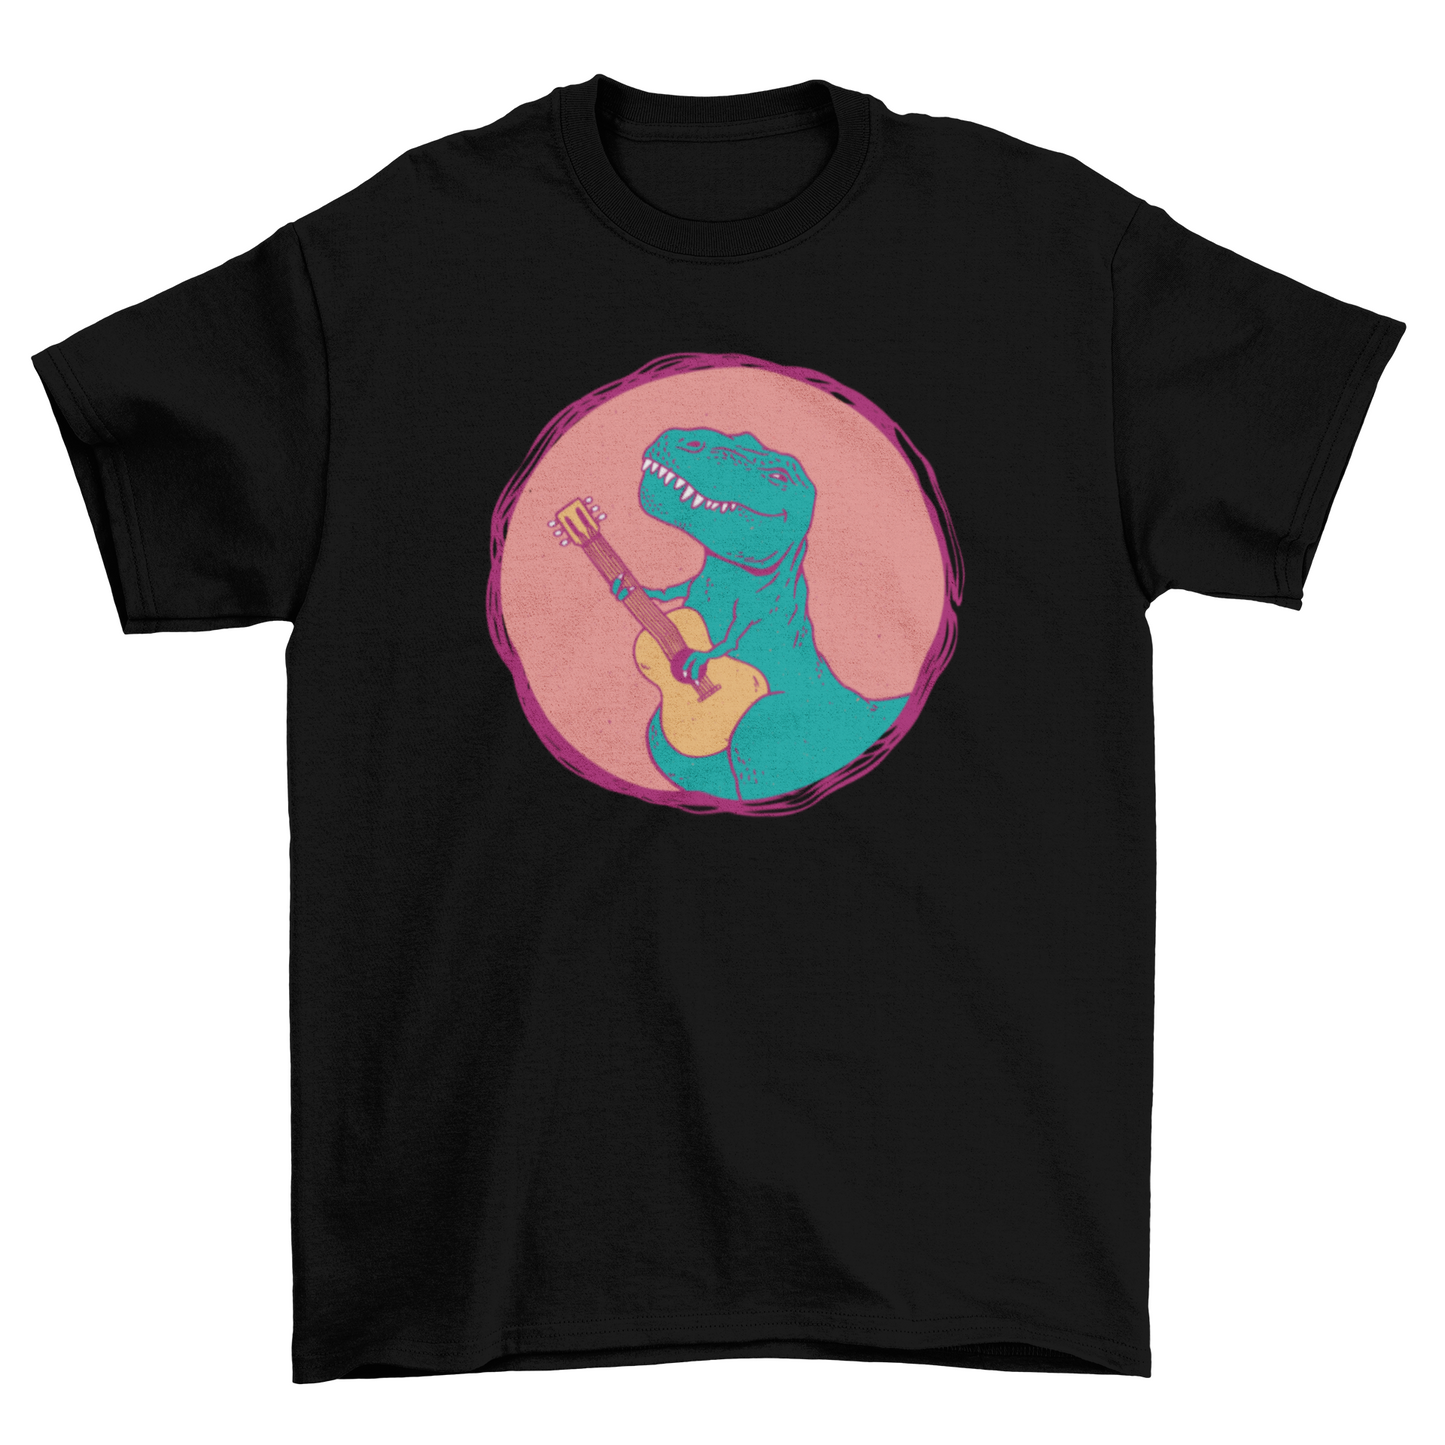 T-rex guitarist t-shirt